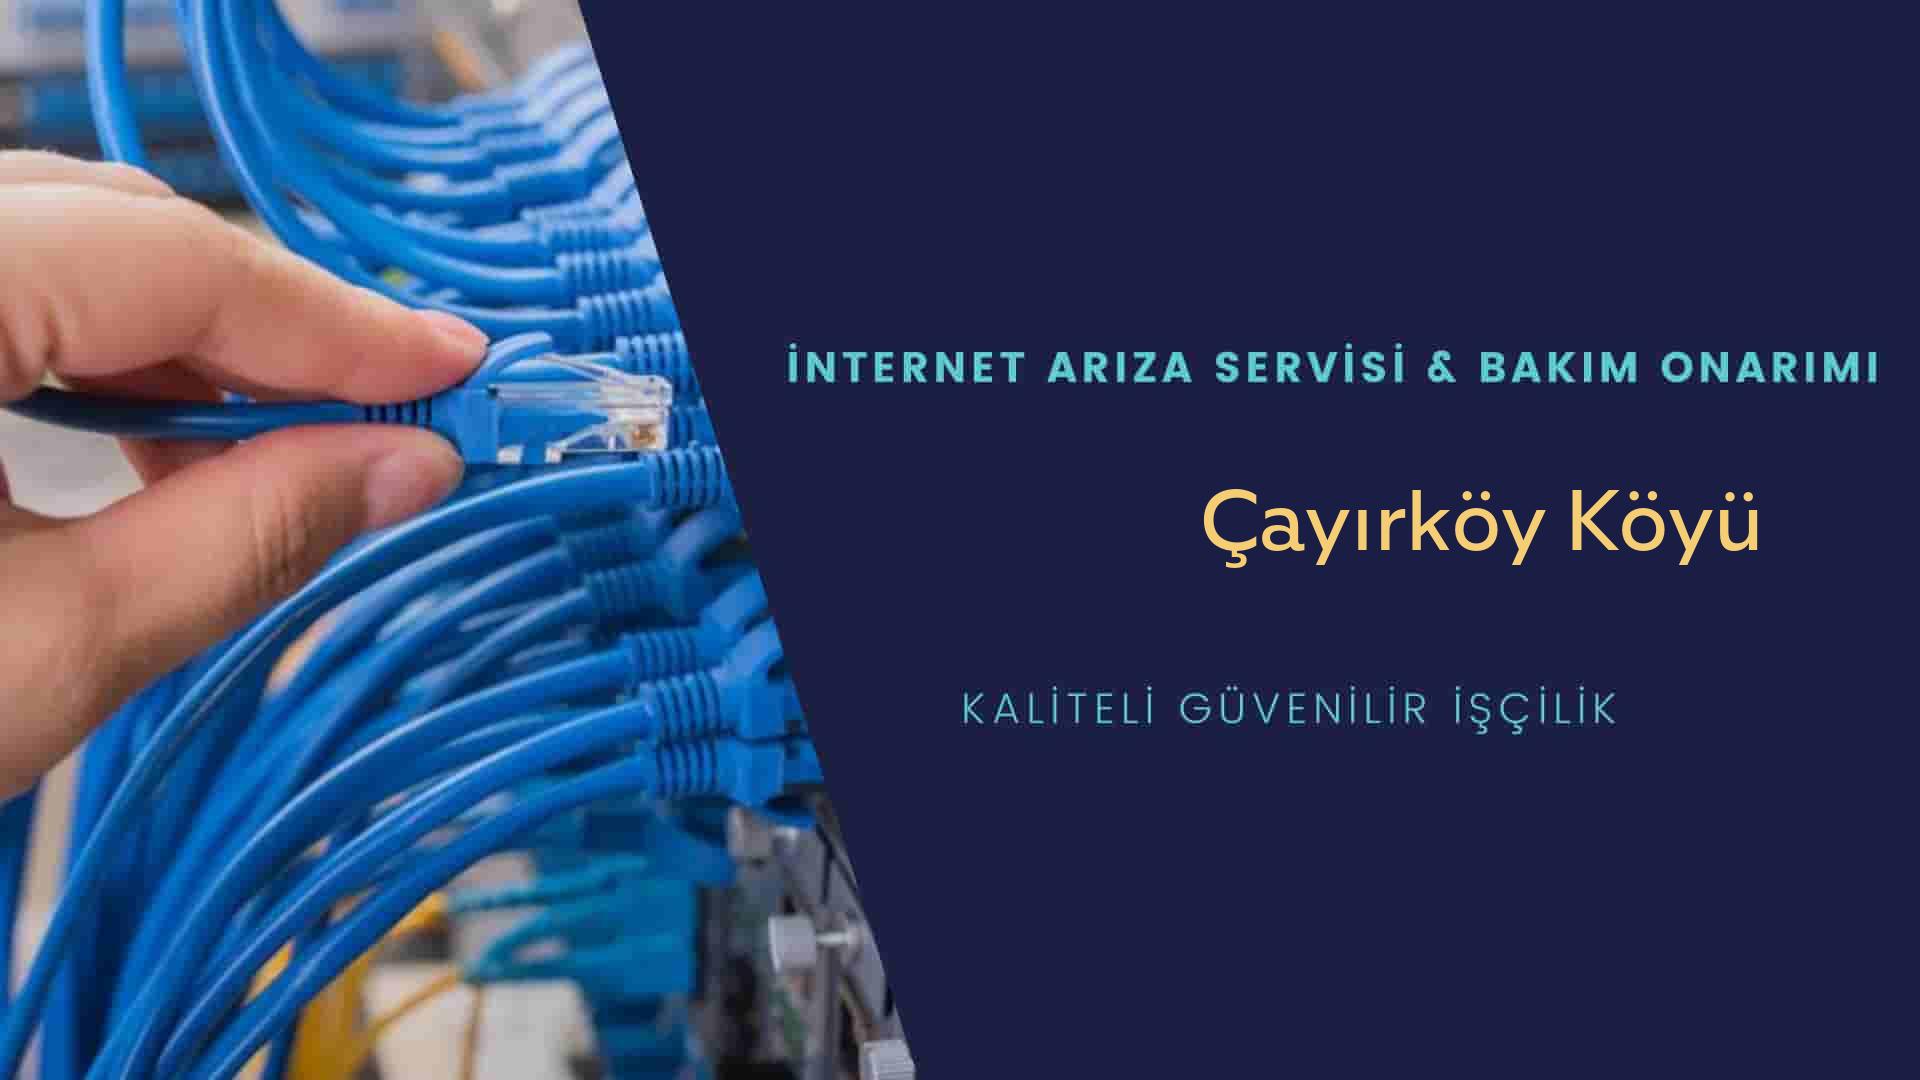 Çayırköy Köyü internet kablosu çekimi yapan yerler veya elektrikçiler mi? arıyorsunuz doğru yerdesiniz o zaman sizlere 7/24 yardımcı olacak profesyonel ustalarımız bir telefon kadar yakındır size.